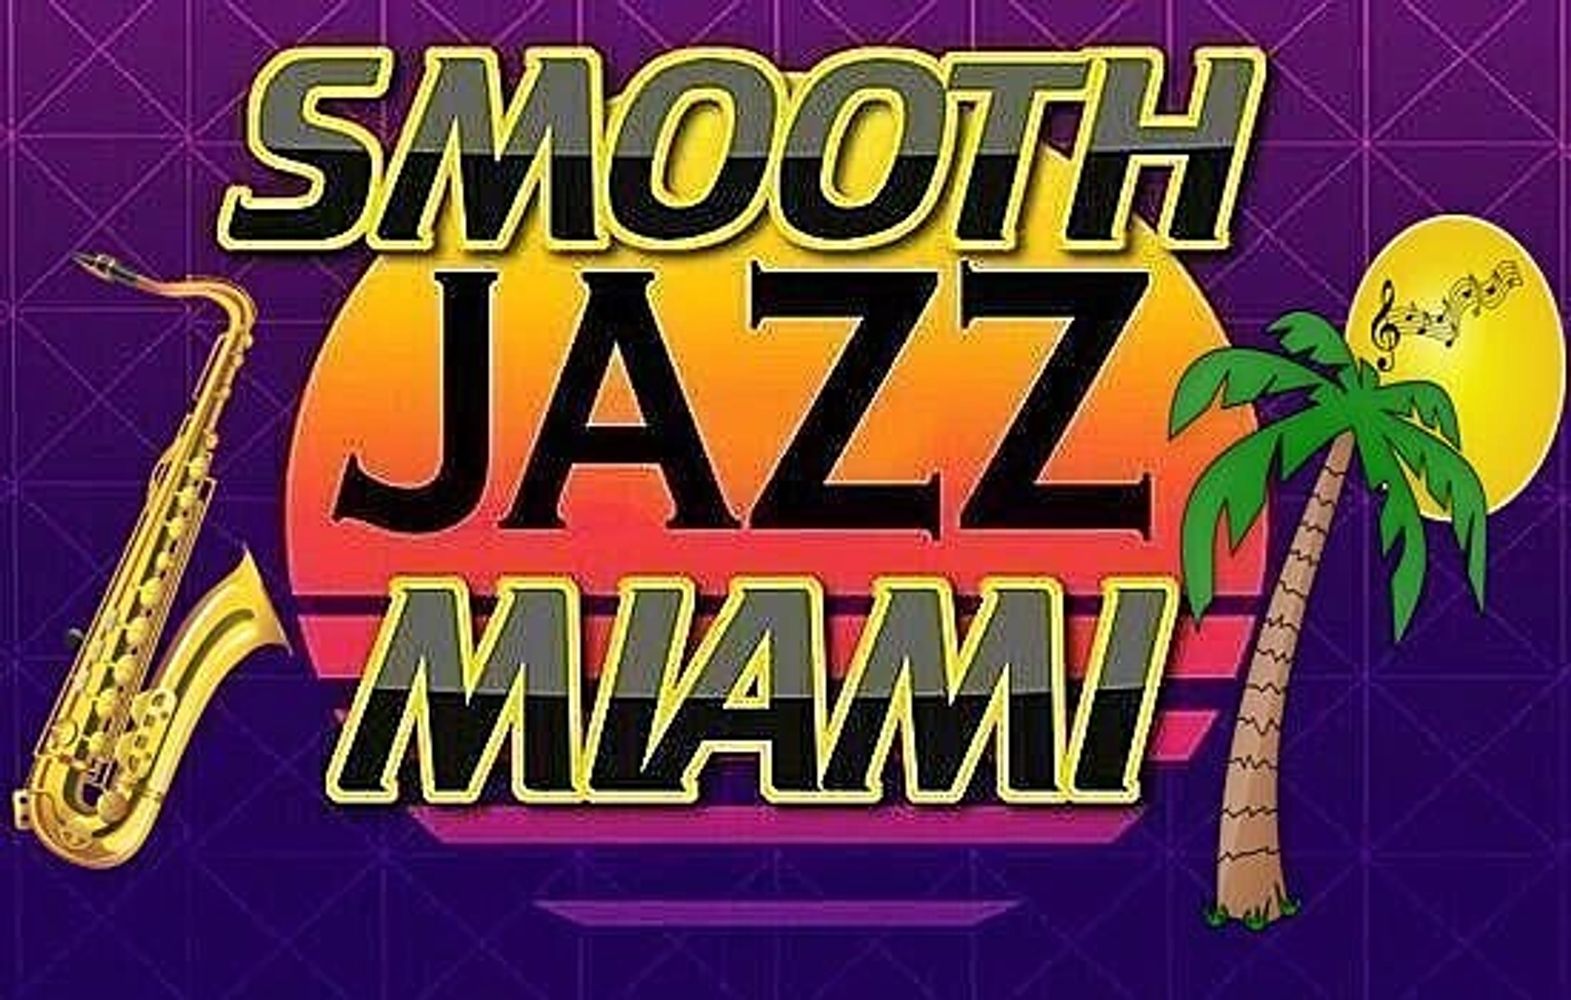 Smooth Jazz Miami - www.SmoothJazzMiami.net